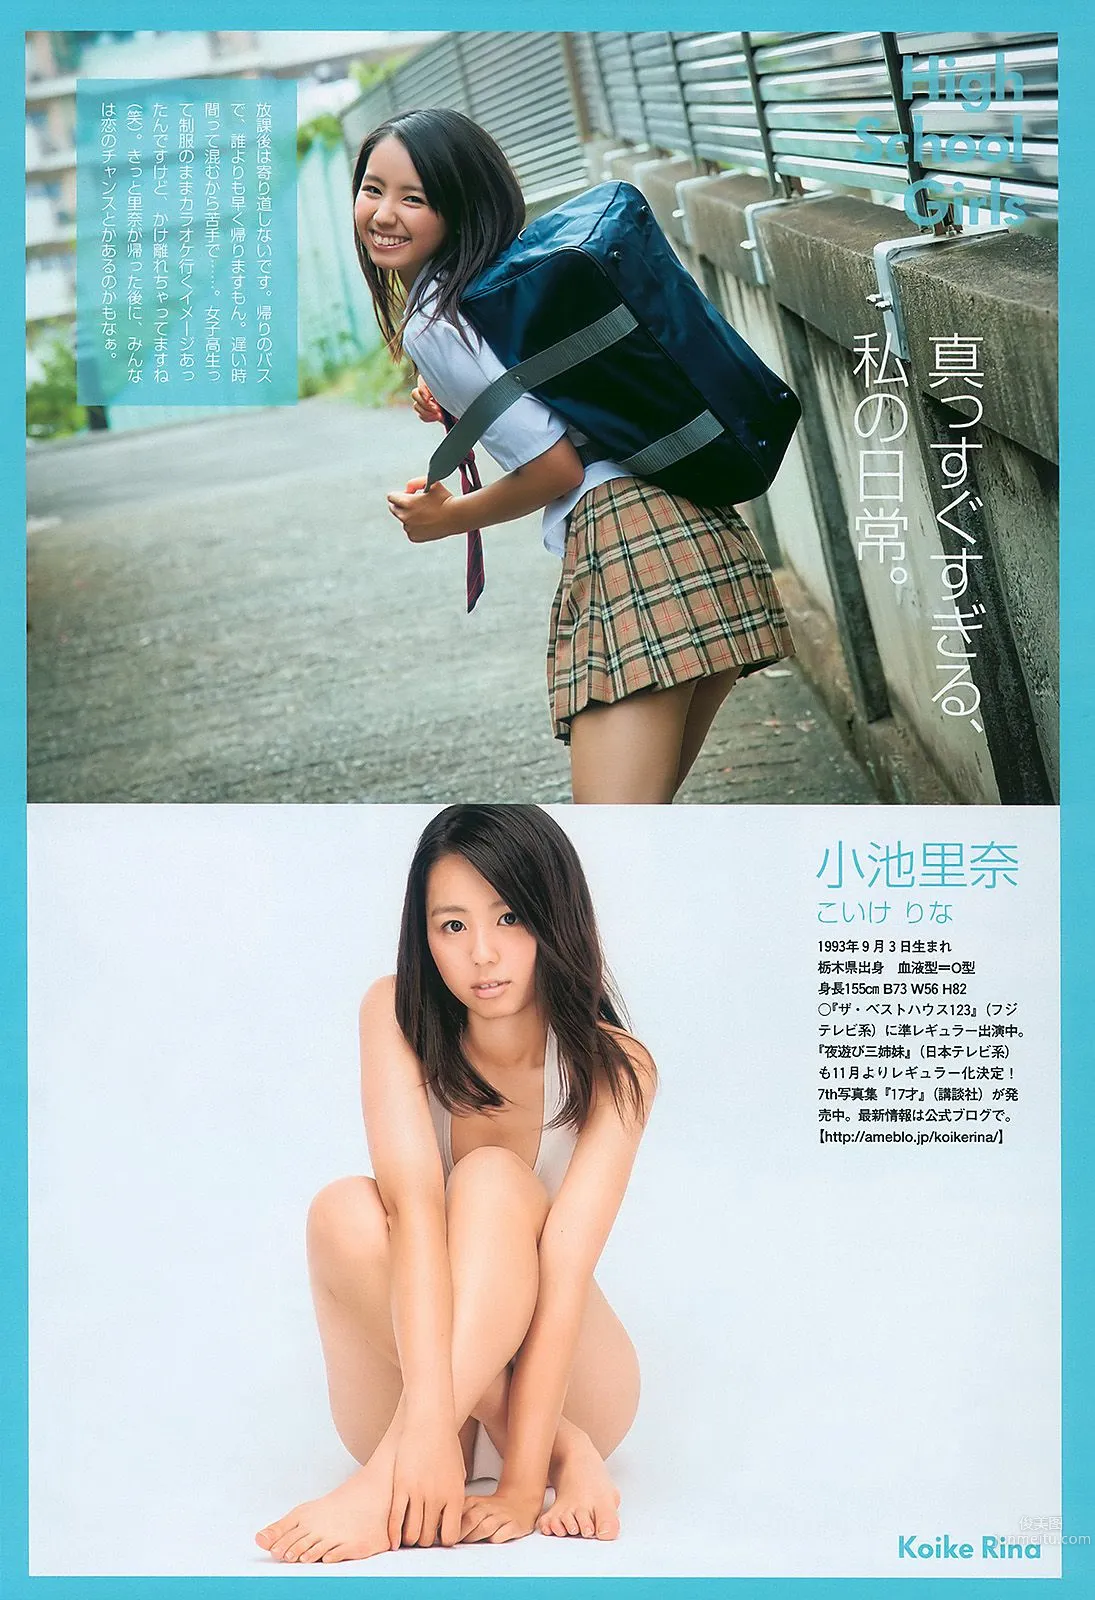 安めぐみ 愛衣 逢沢りな [Weekly Playboy] 2010年No.43 写真杂志22